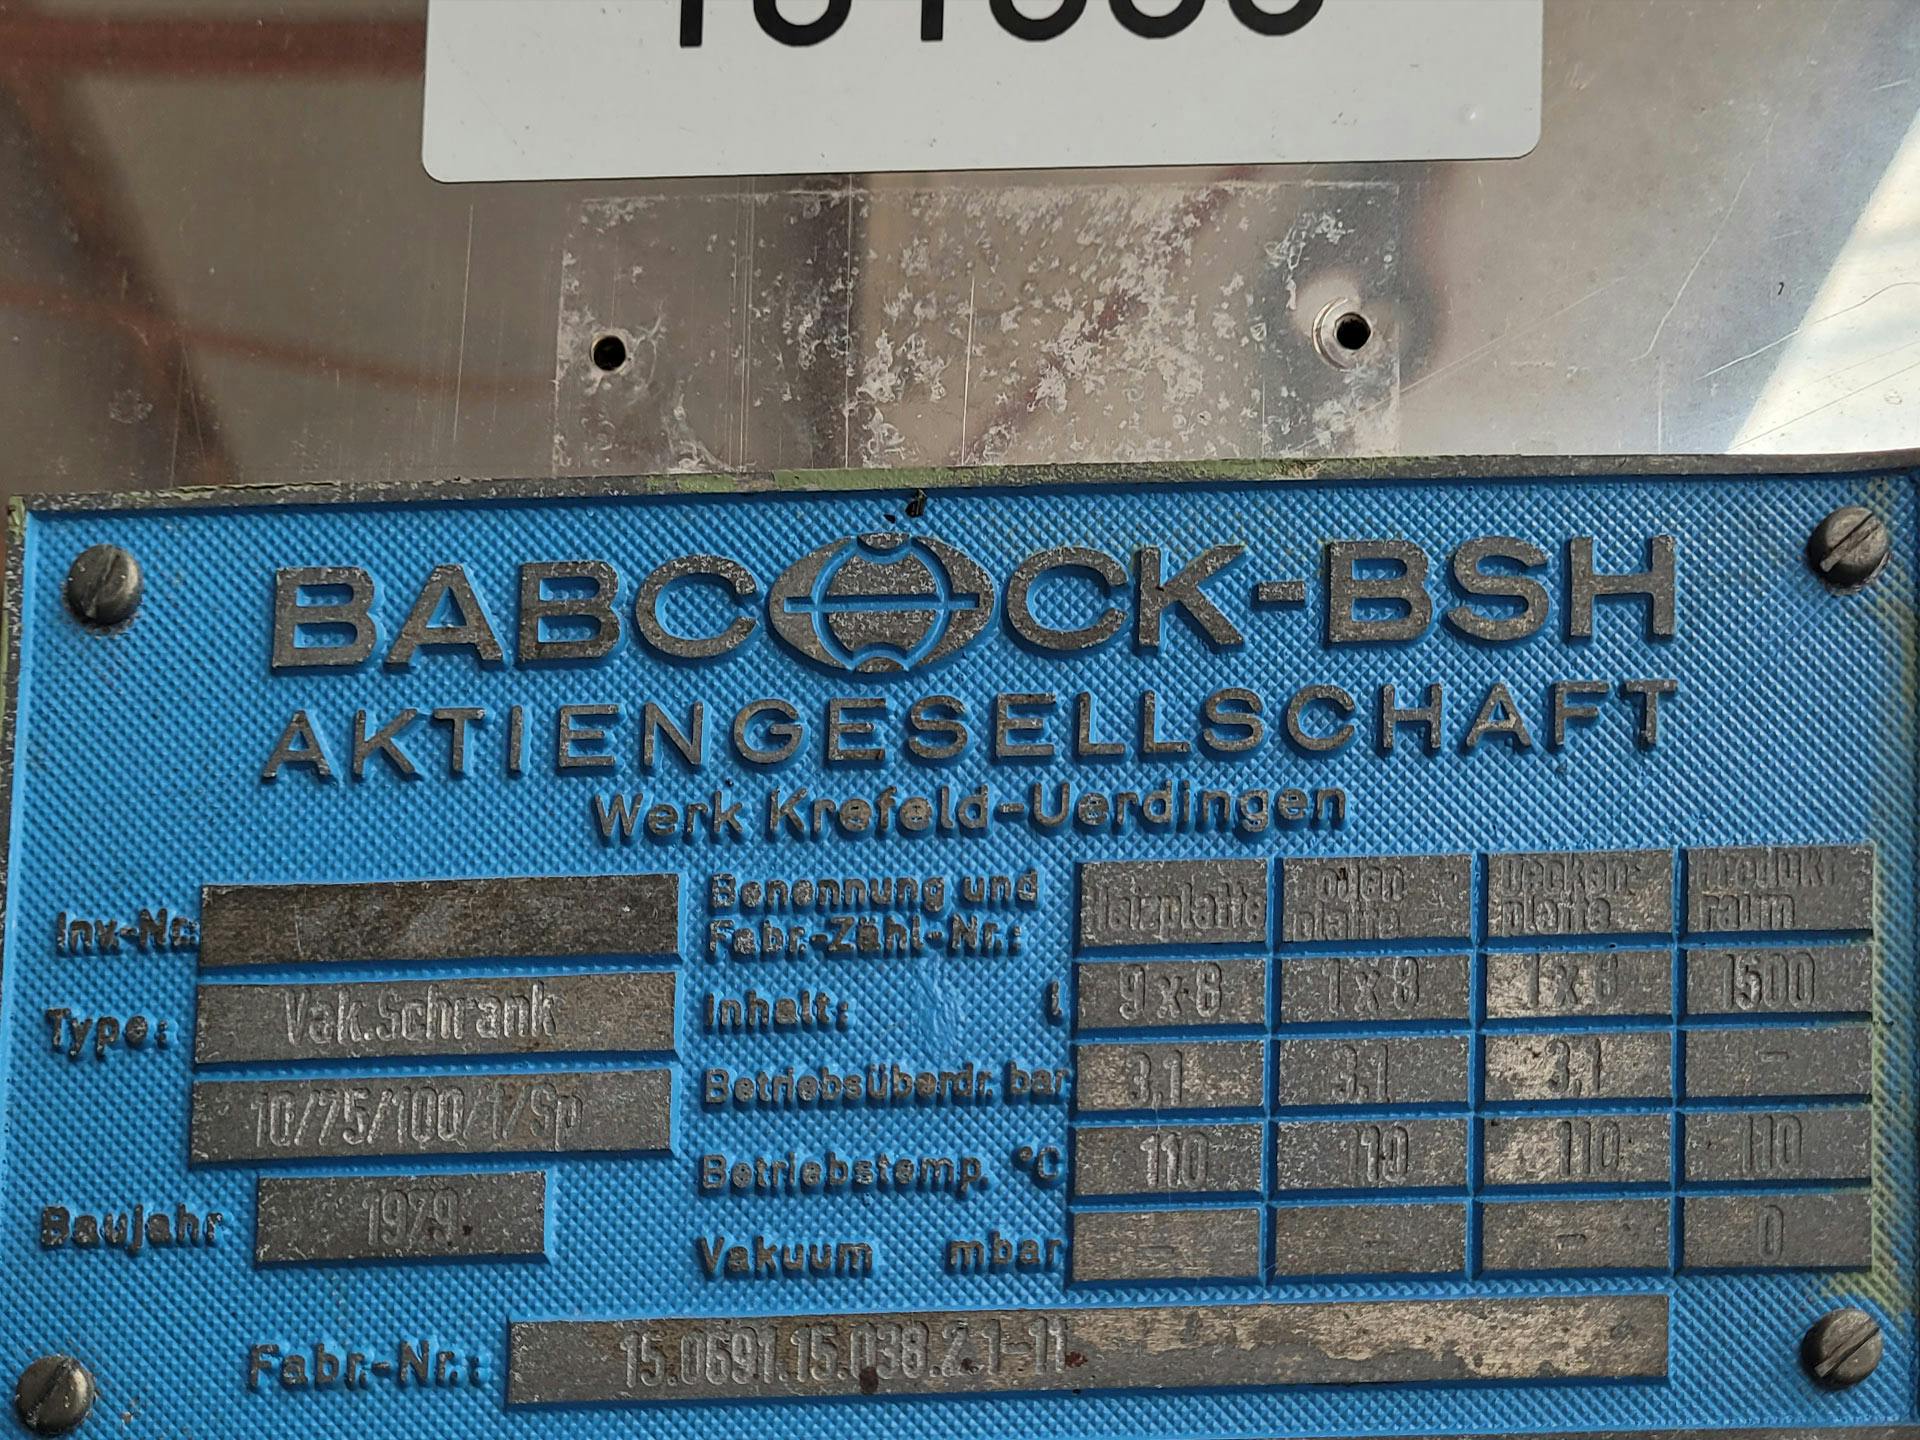 Babcock-BSH 10/75/100/1/SP - Tácová sušicka - image 5